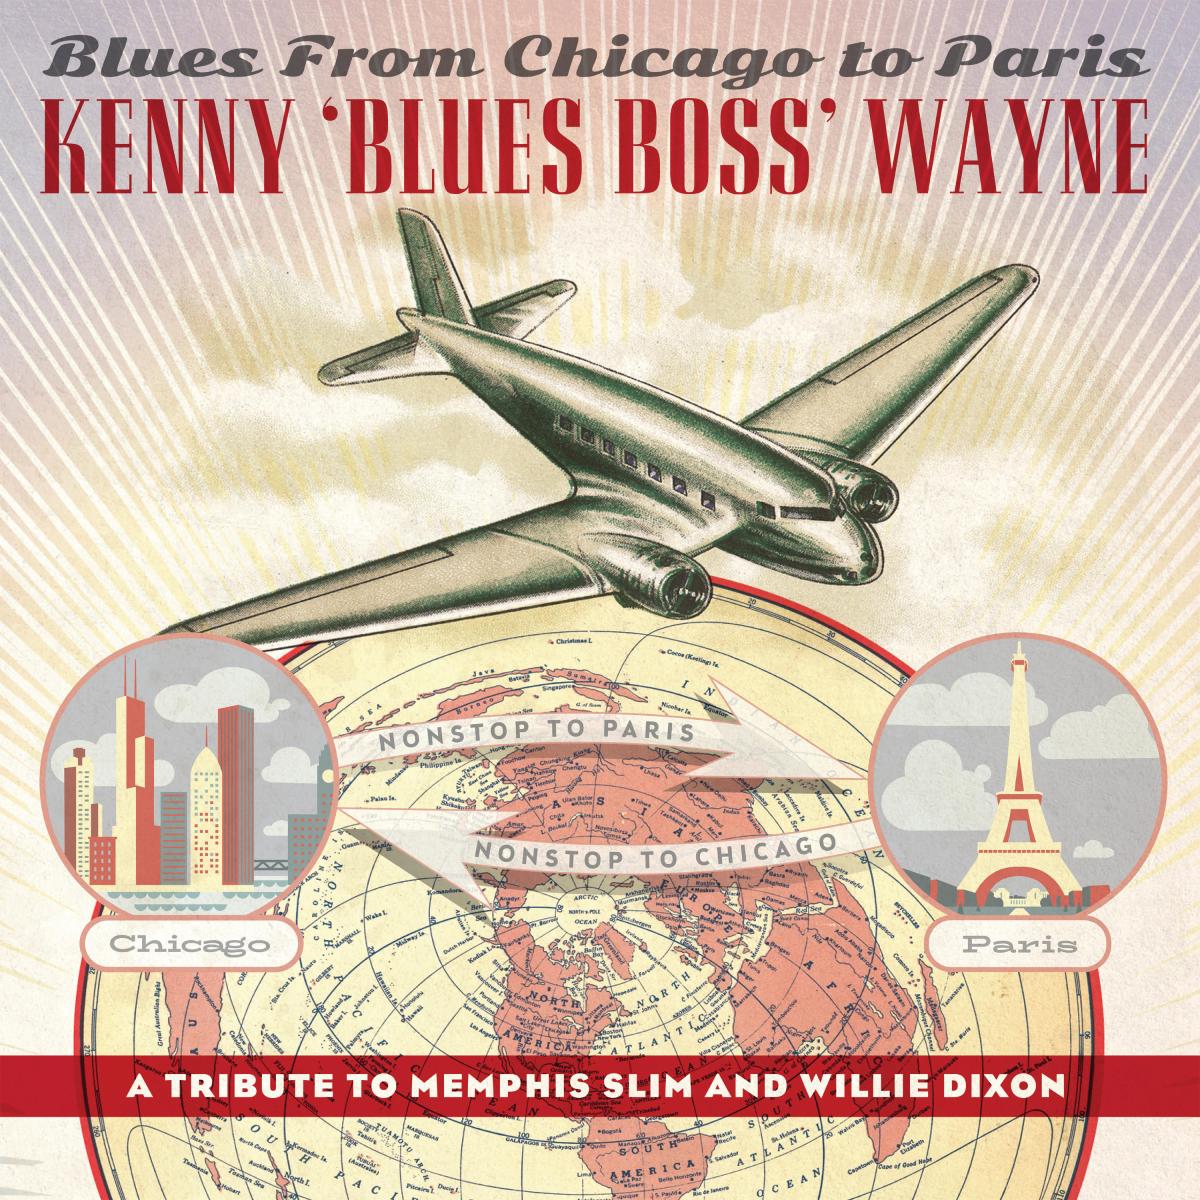 Kenny “Blues Boss” Wayne